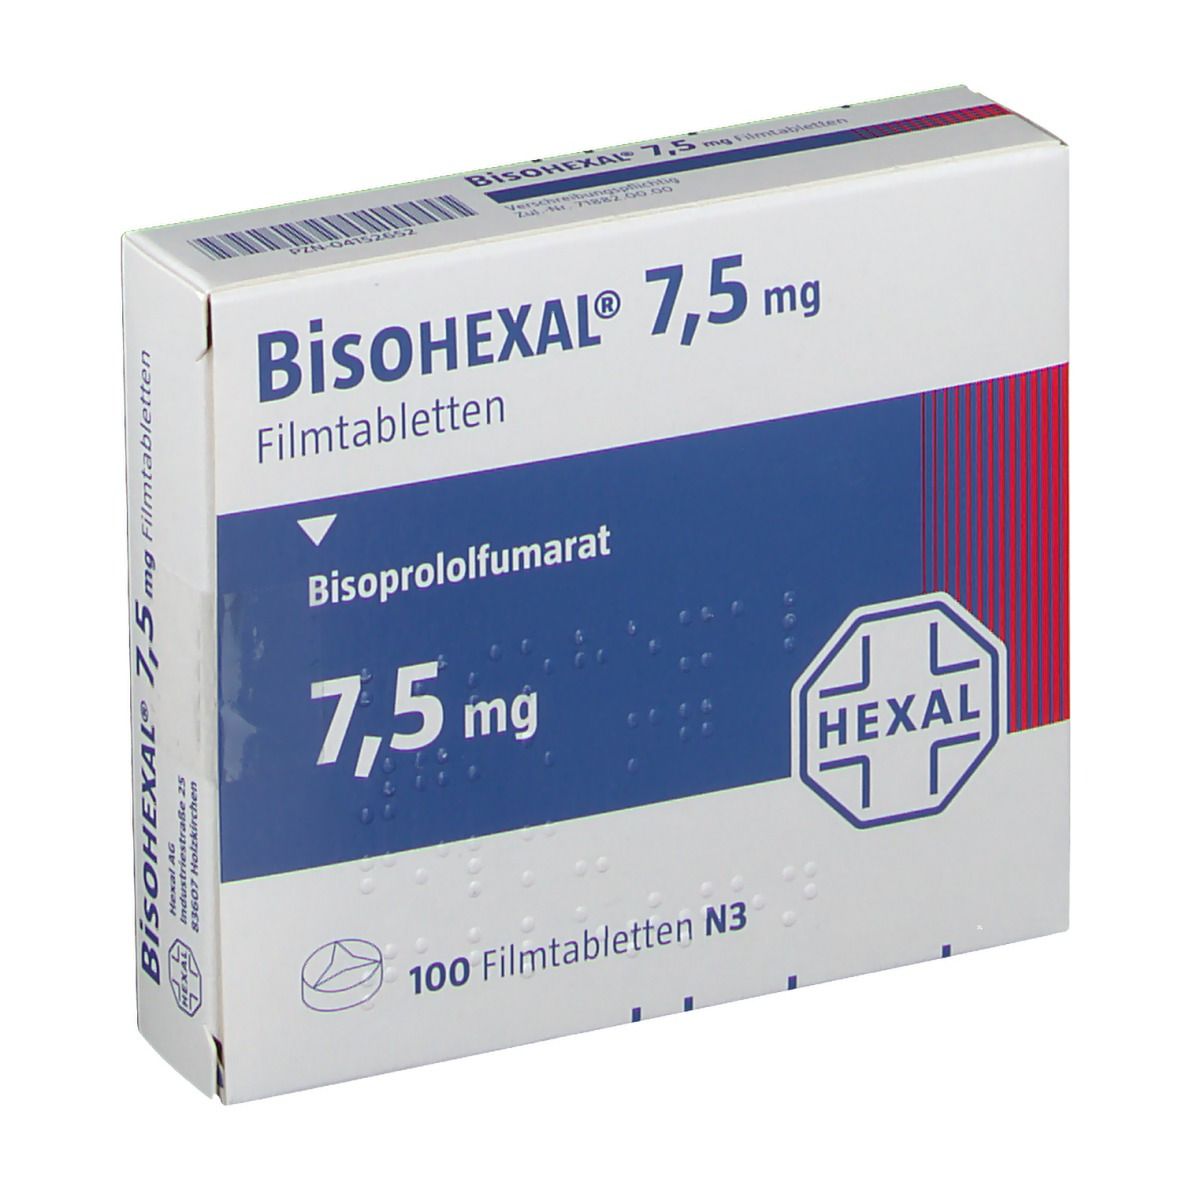 BisoHEXAL® 7,5 mg